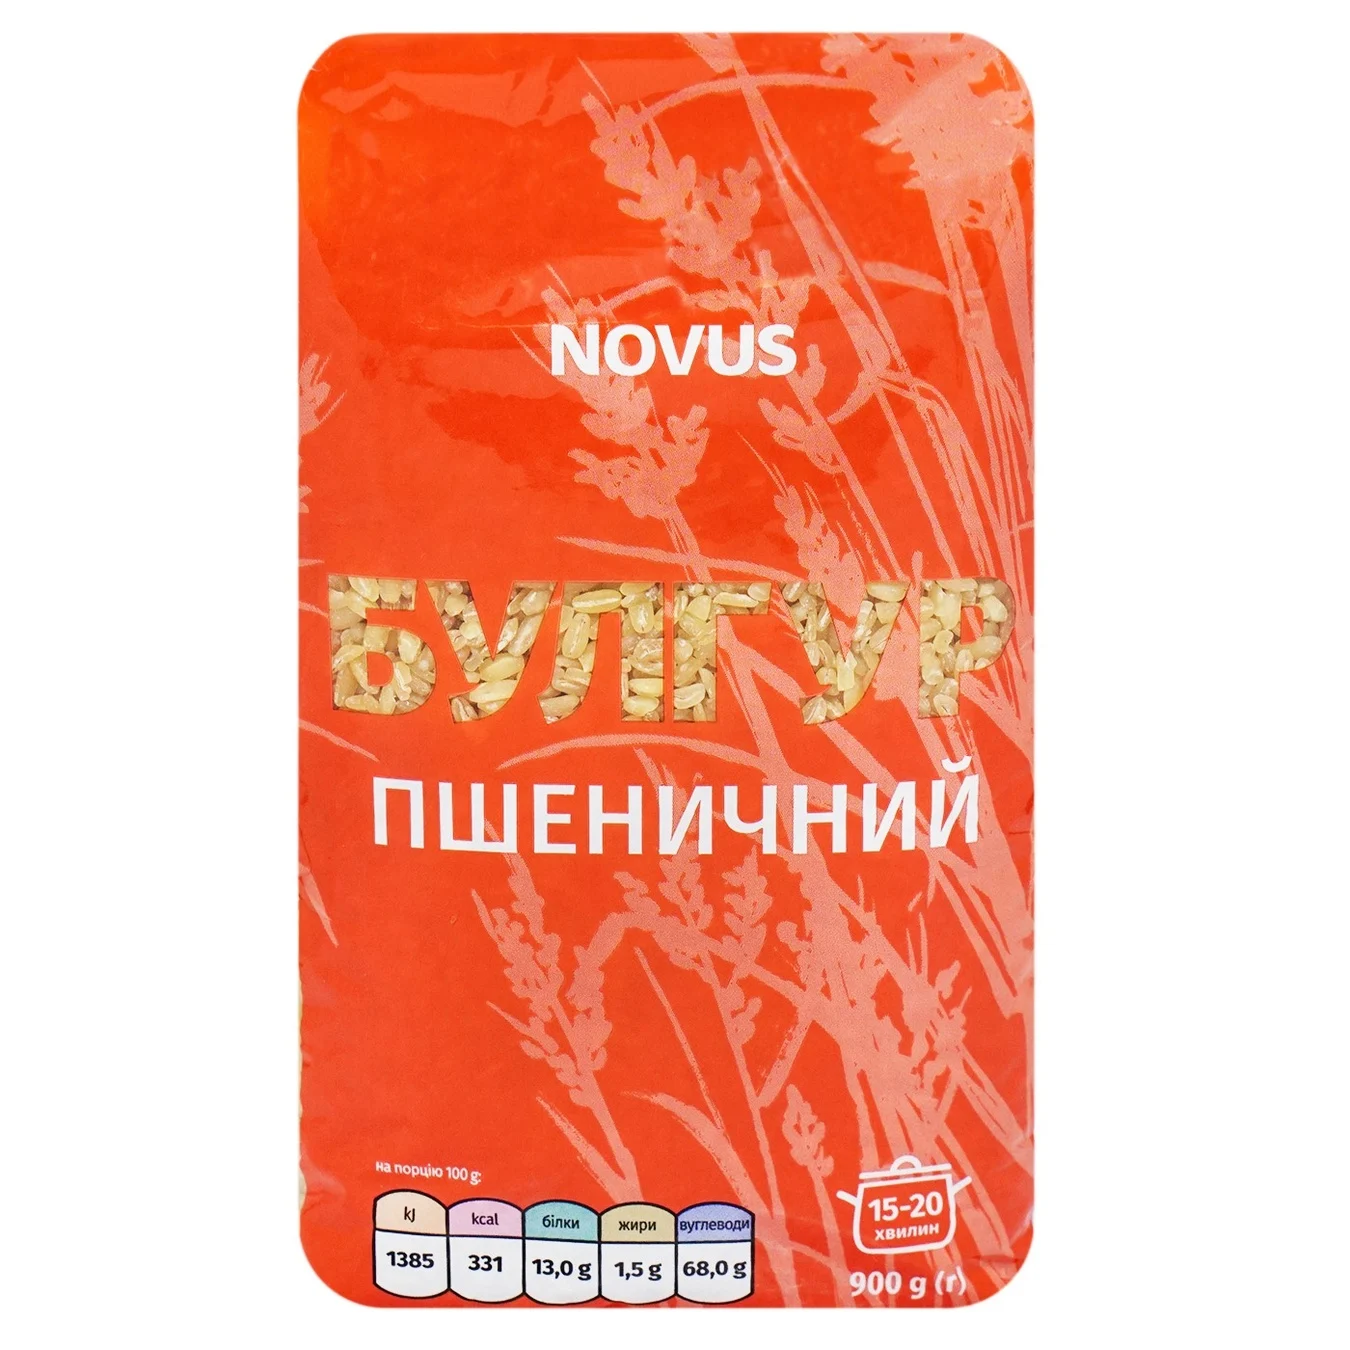 NOVUS Wheat Bulhur 900g